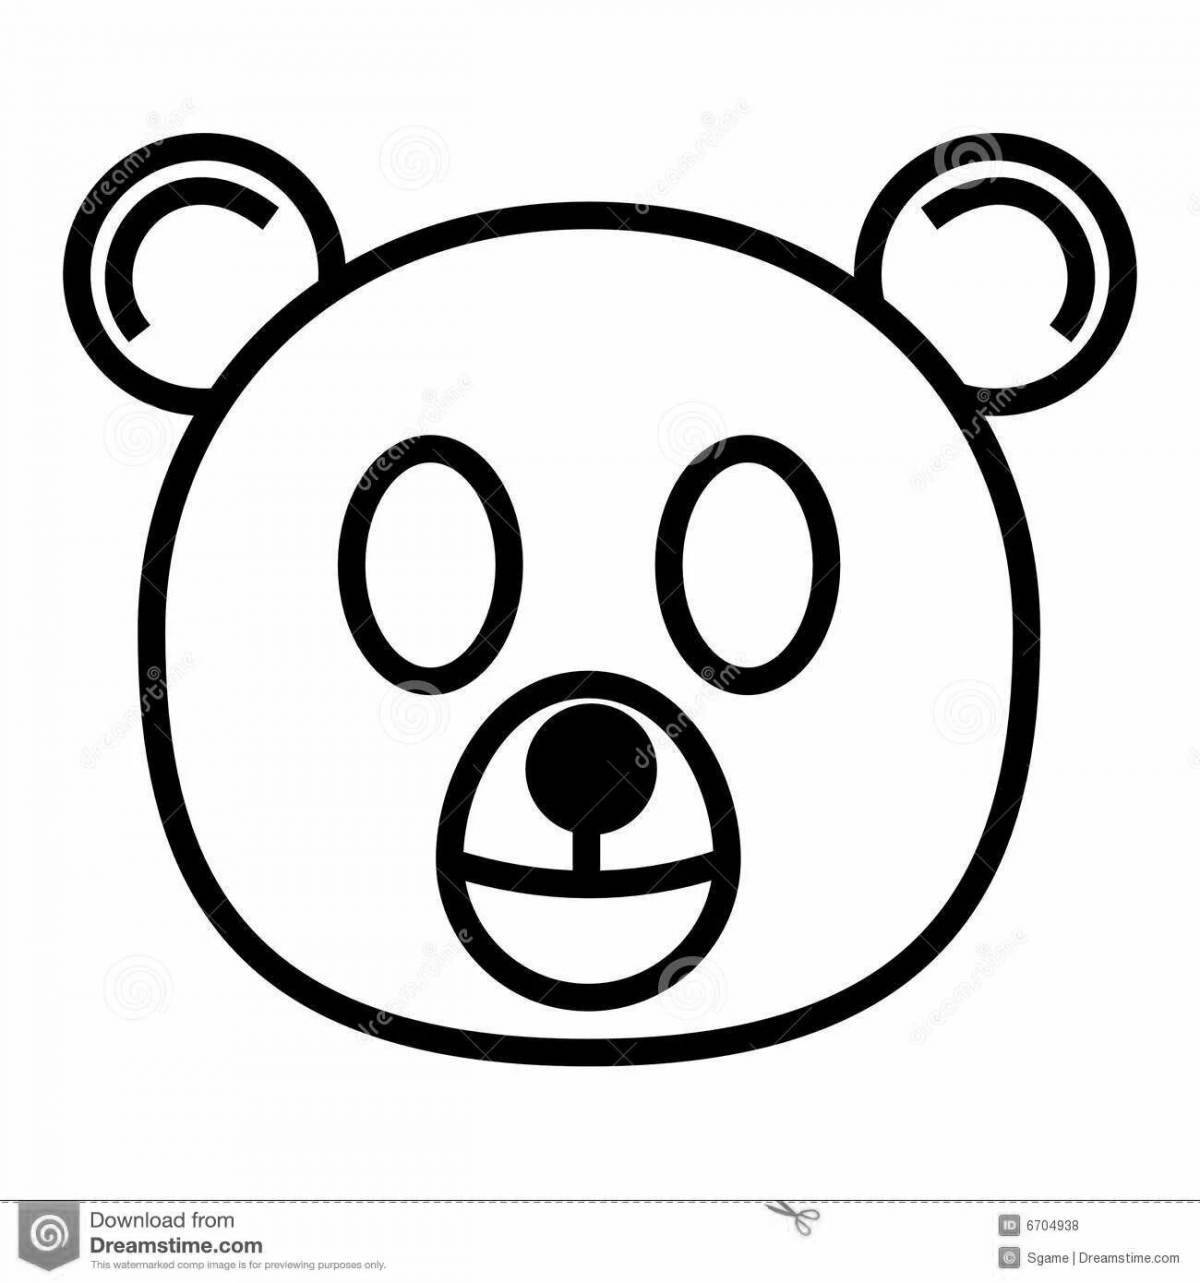 Cute bear face coloring book